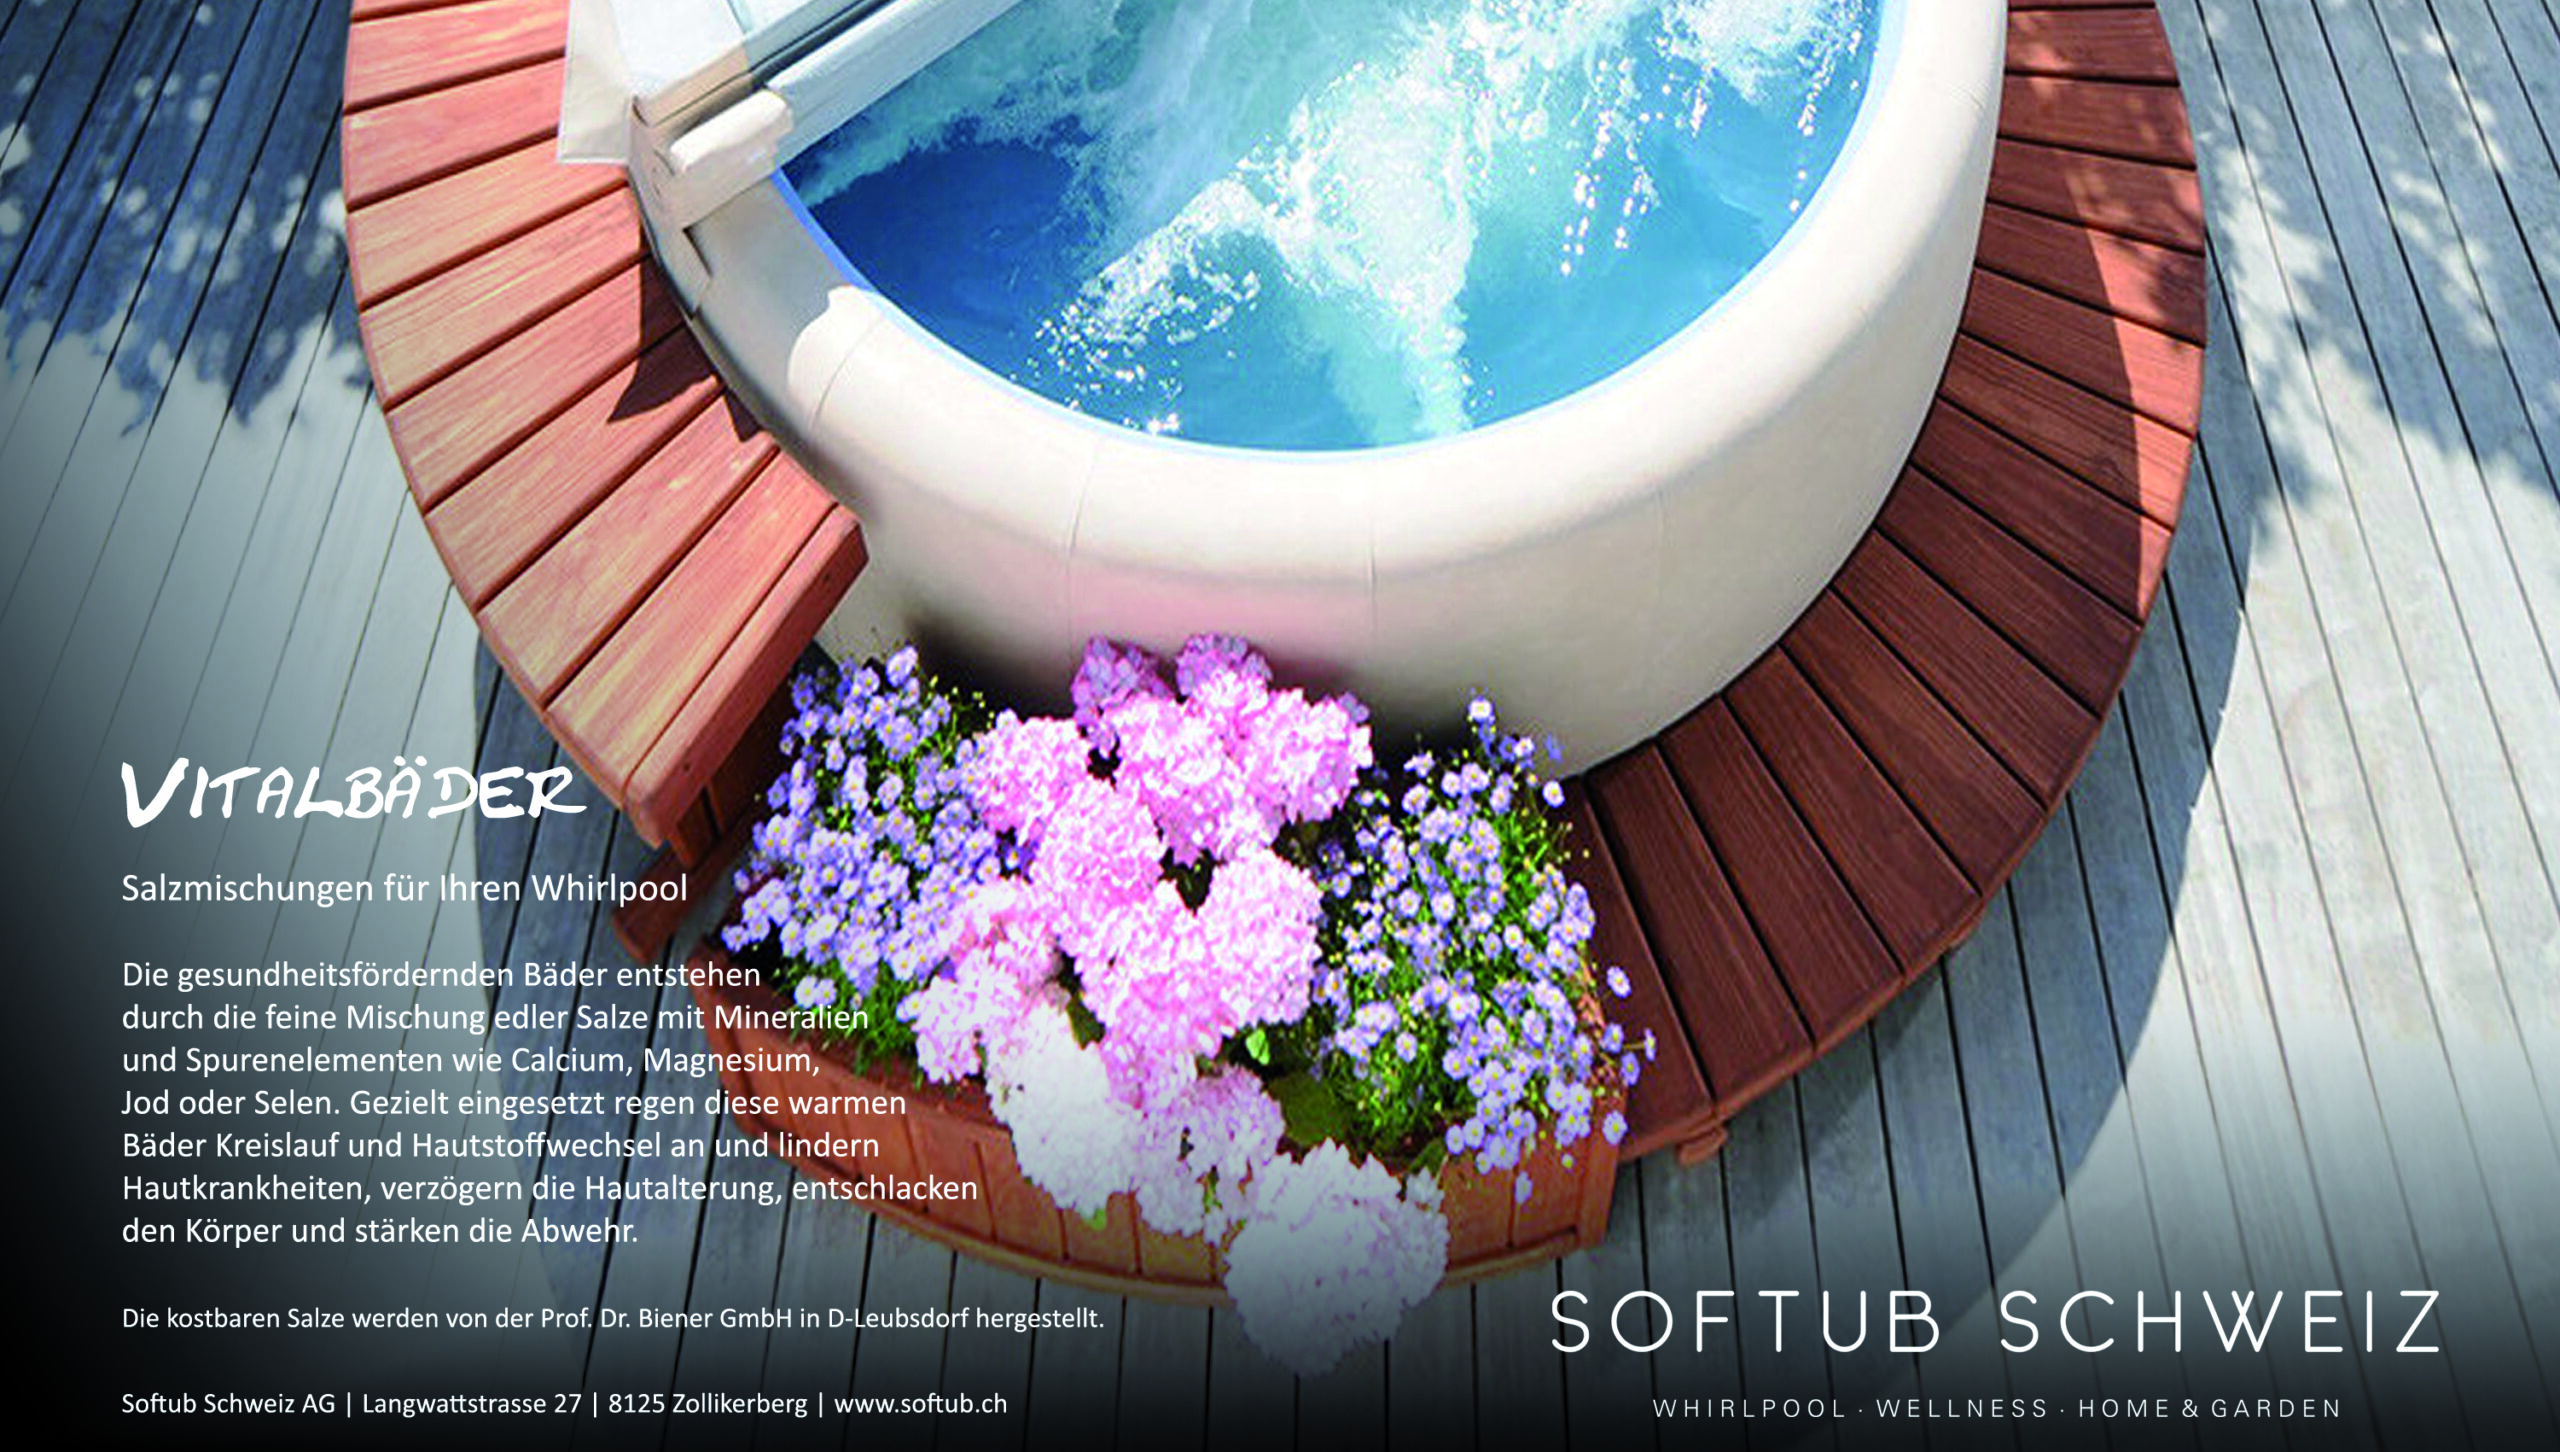 Vitality baths - salt mixtures for your whirlpool.